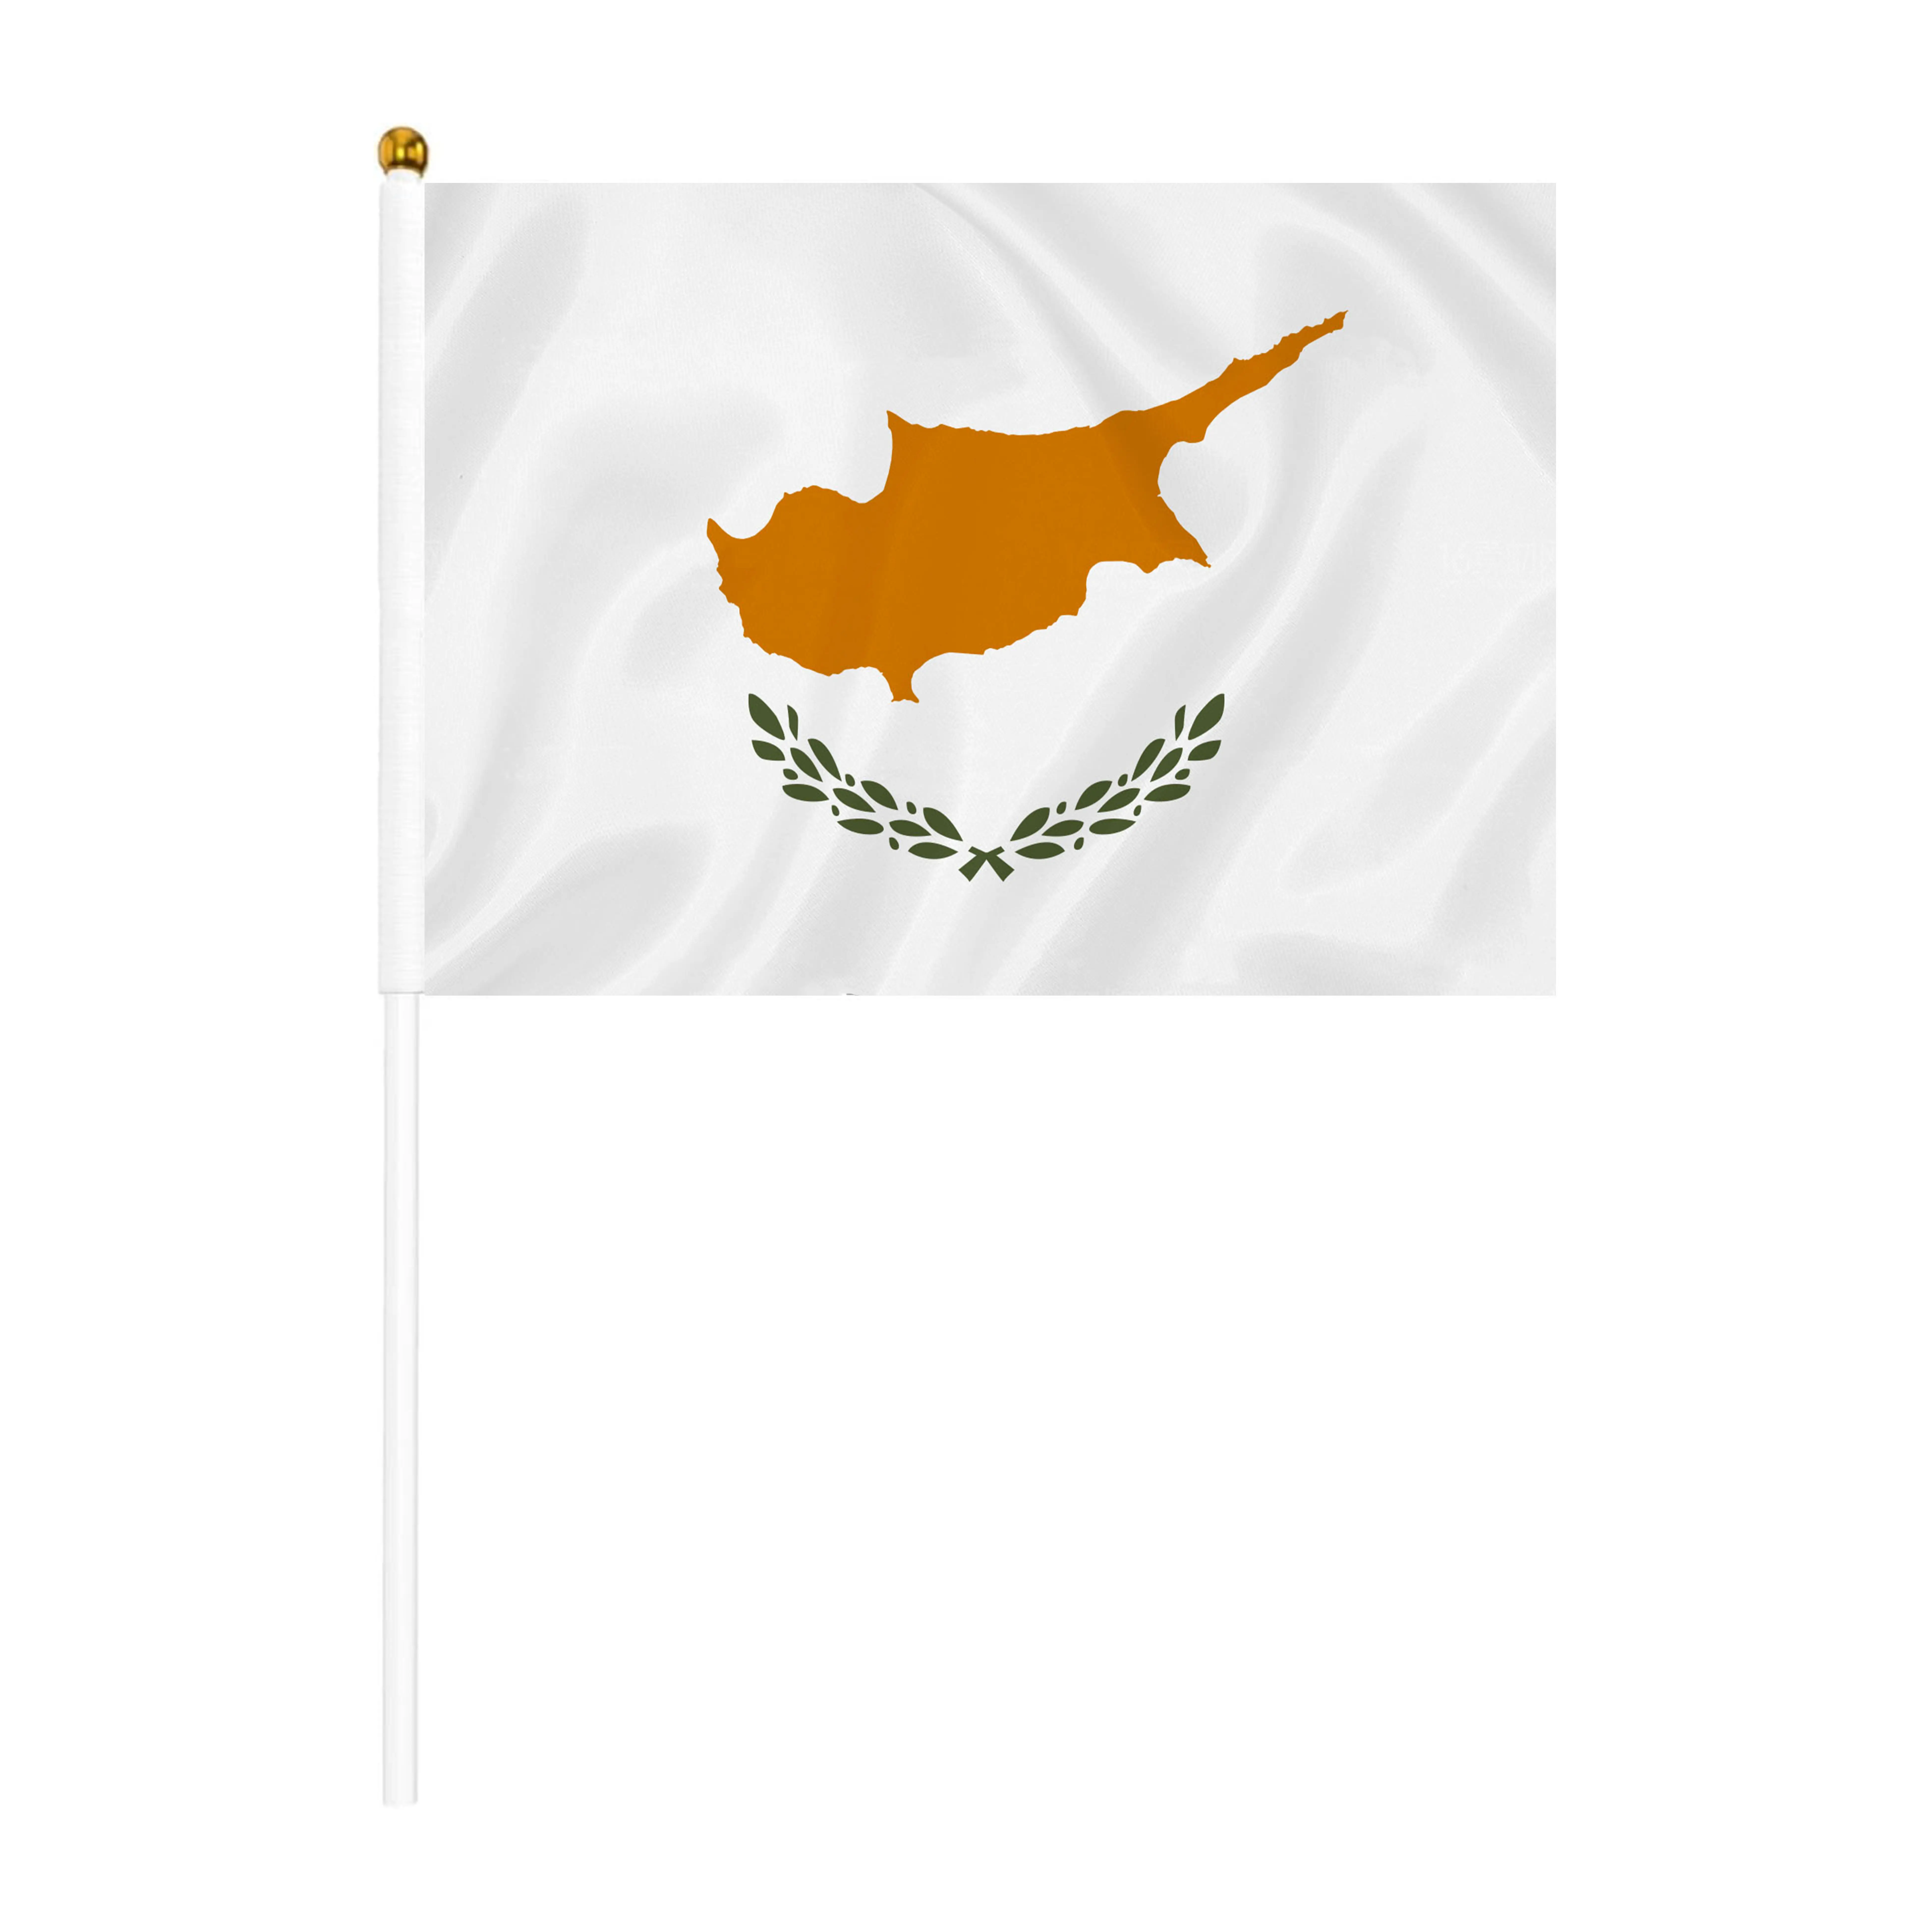 משלוח מהיר קידום קפריסין יד מנופפת דגל כל הארצות דגלים